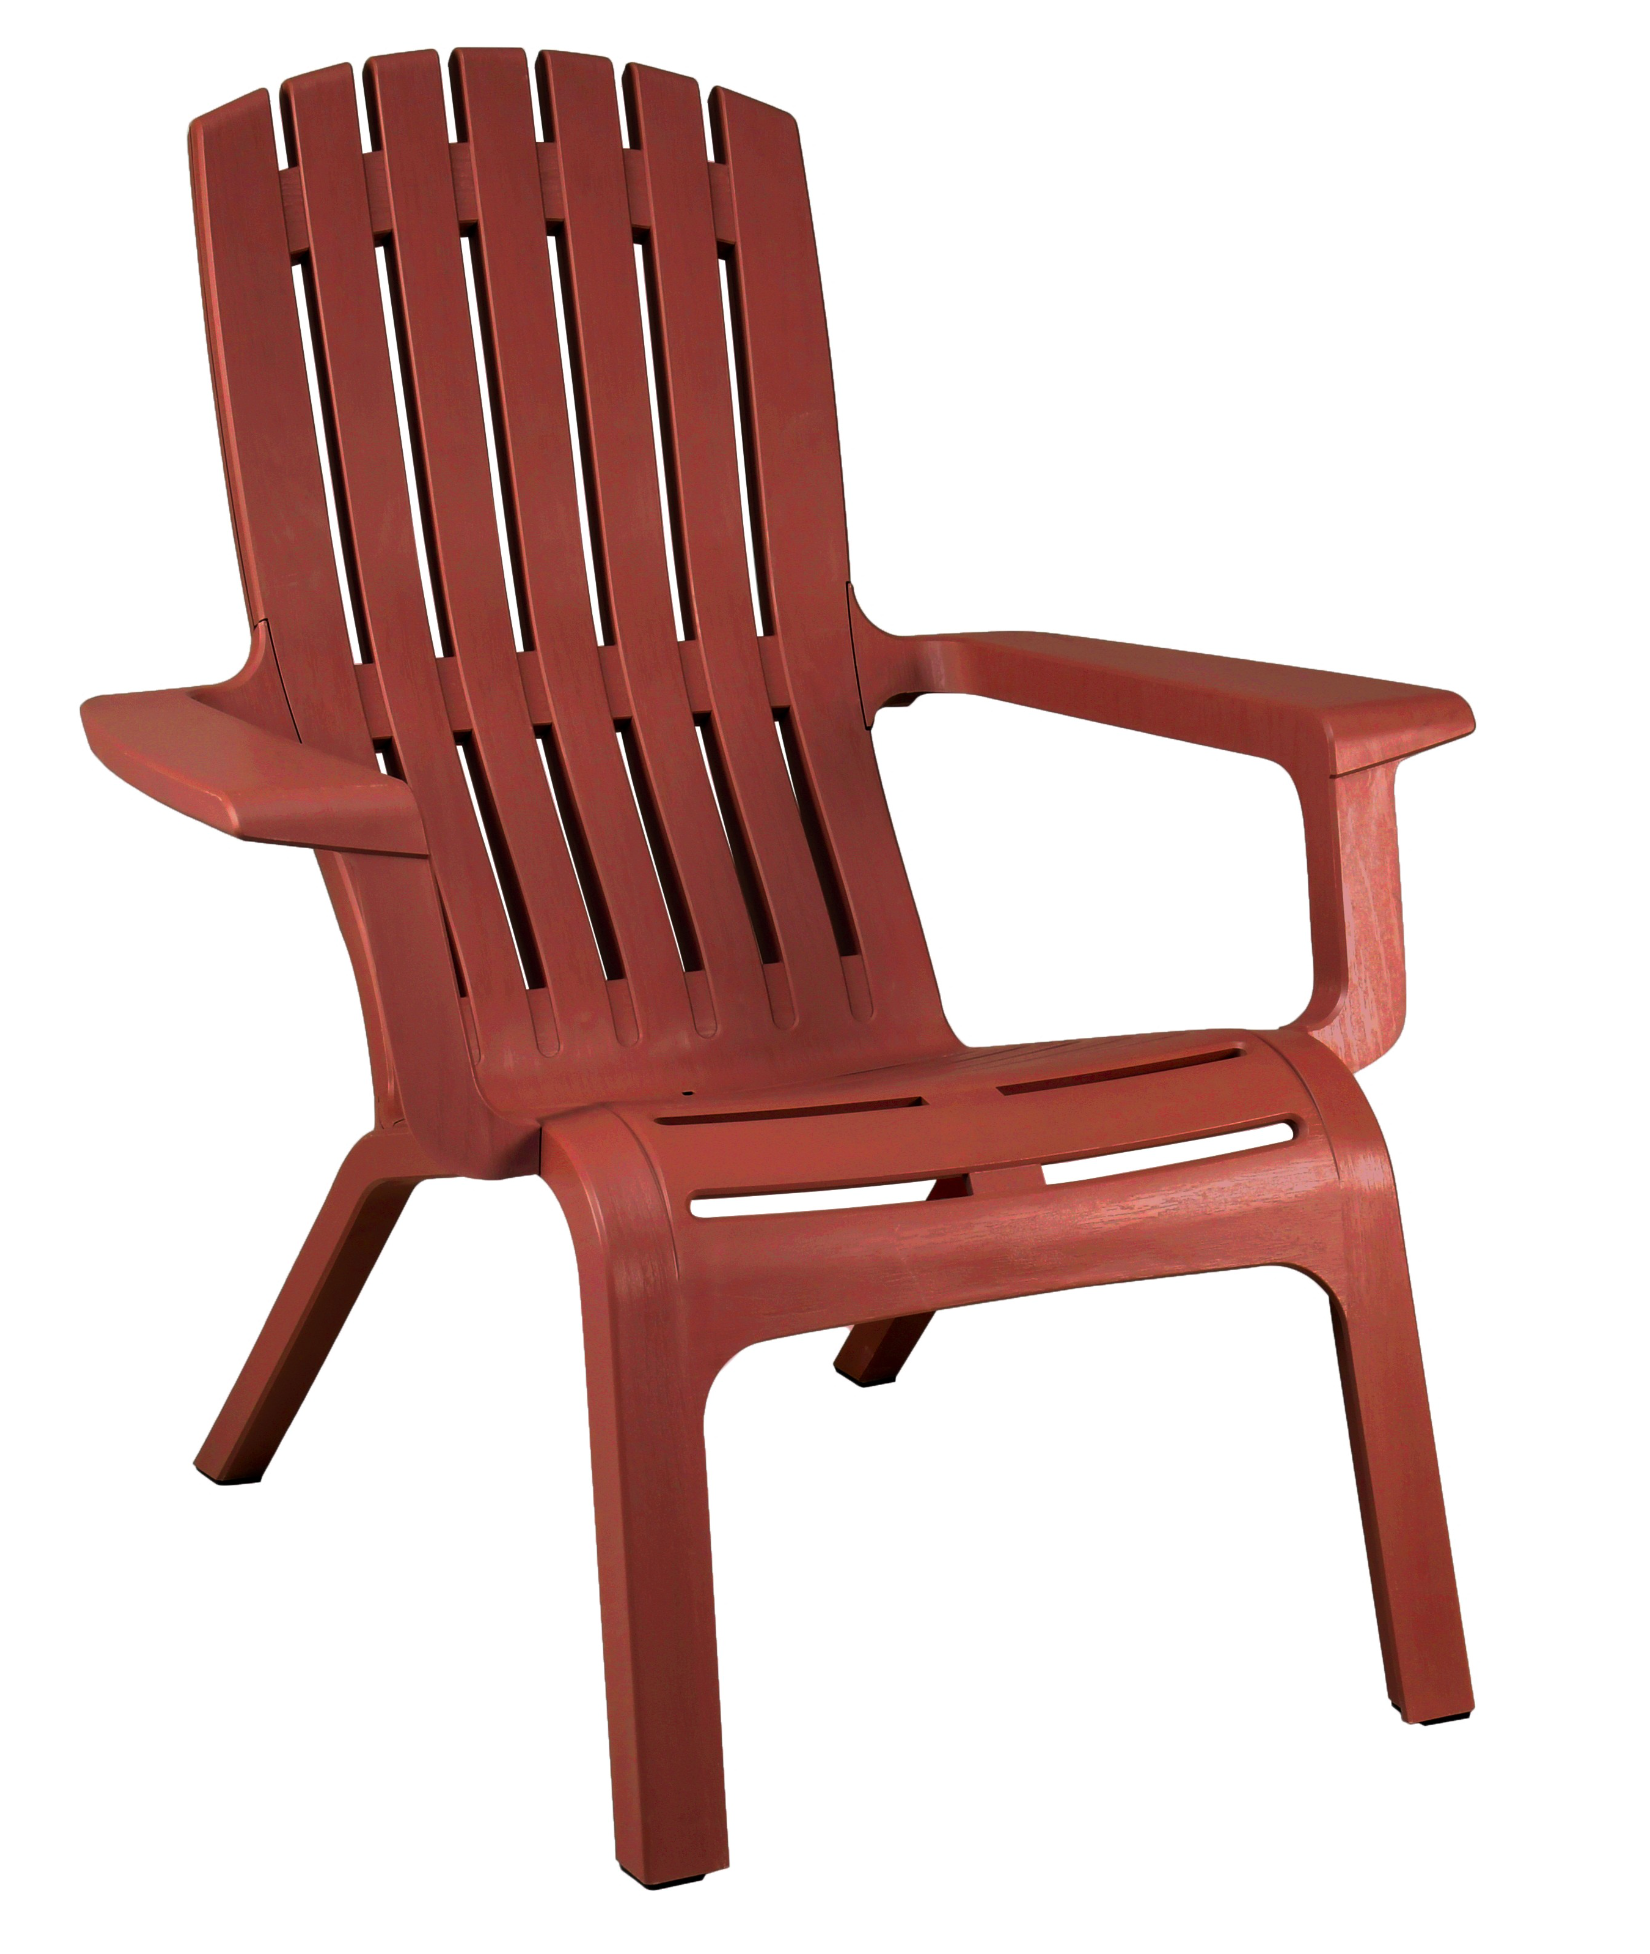 silla Adirondack roja plastico grosfillex